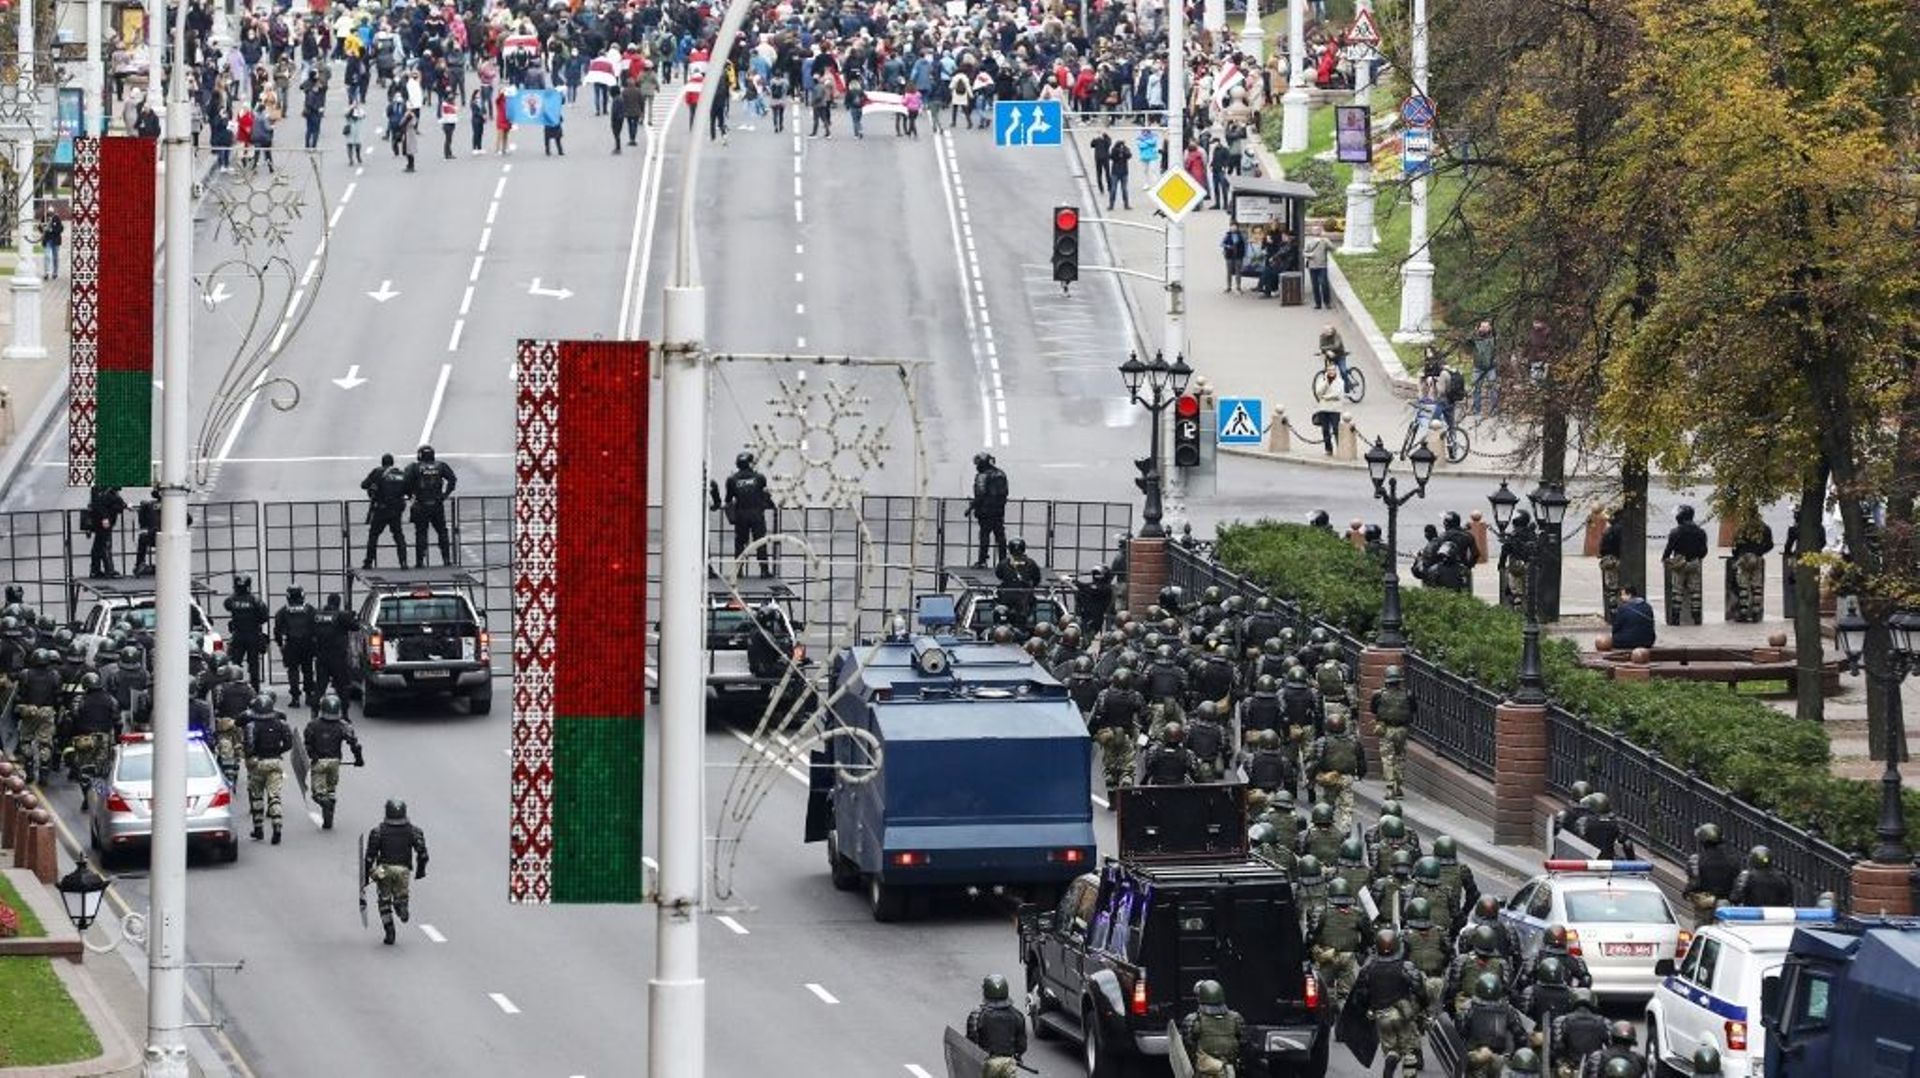 Des forces de sécurité bloquent une rue aux opposants qui manifestent à Minsk le 25 octobre 2020